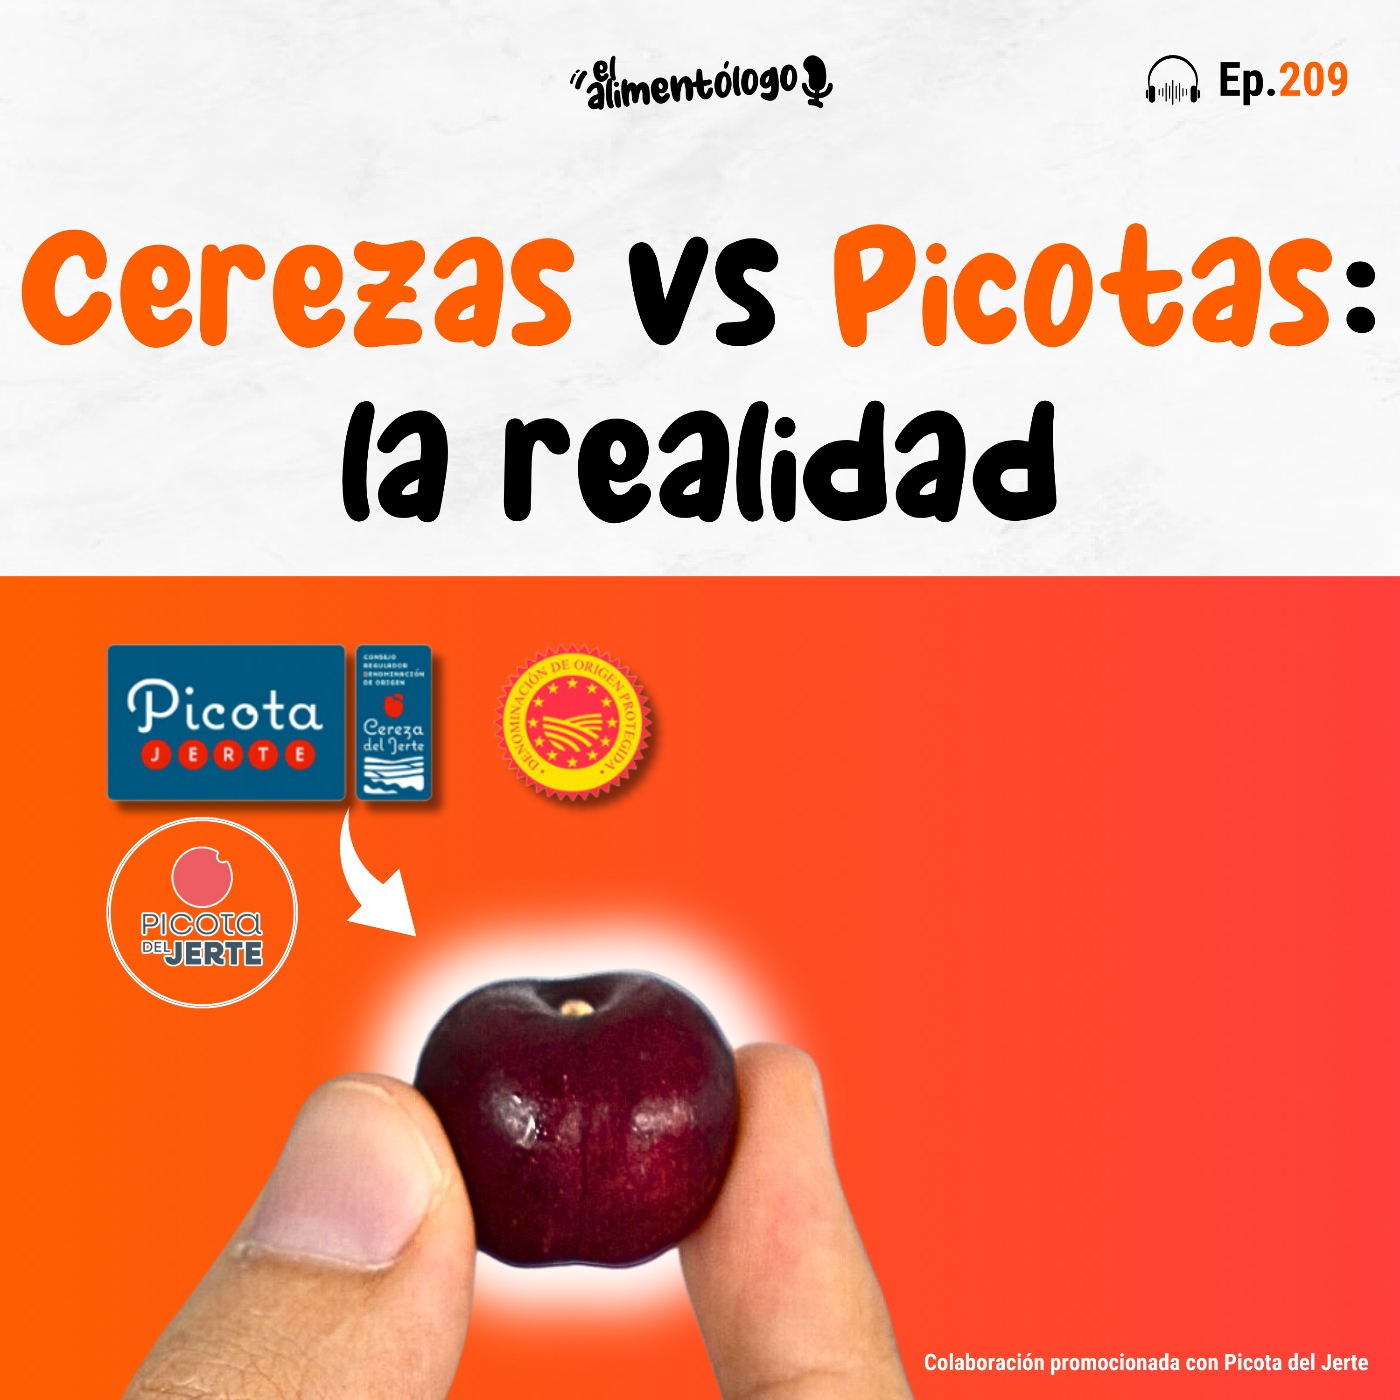 Cerezas vs Picotas: diferencias, propiedades, sostenibilidad (colaboración con Picota del Jerte #publi) (Ep. 209)